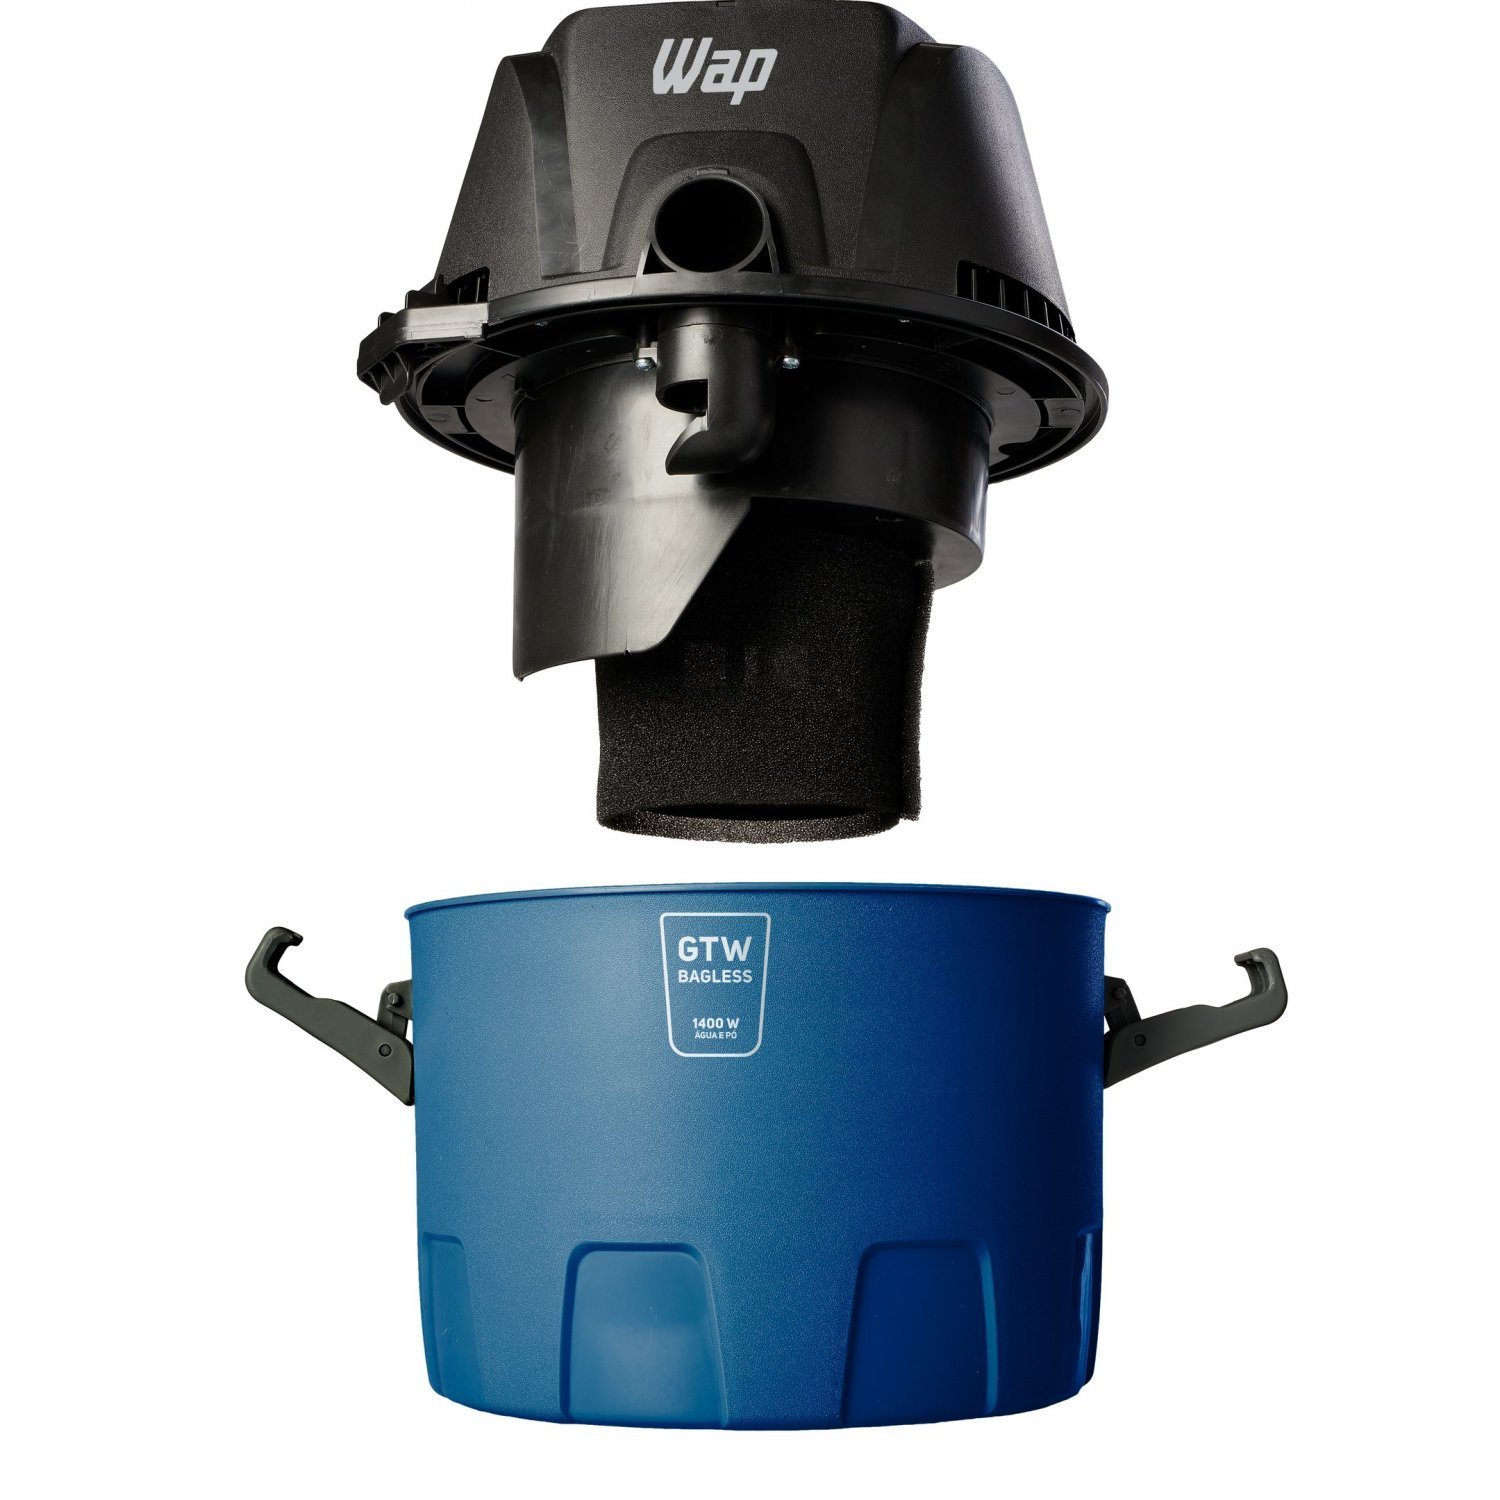 Aspirador de Água e Pó WAP GTW Bagless Alça Ergonômica 6L com Bocal de Sopro 1400W 220V Azul/Preto - 6